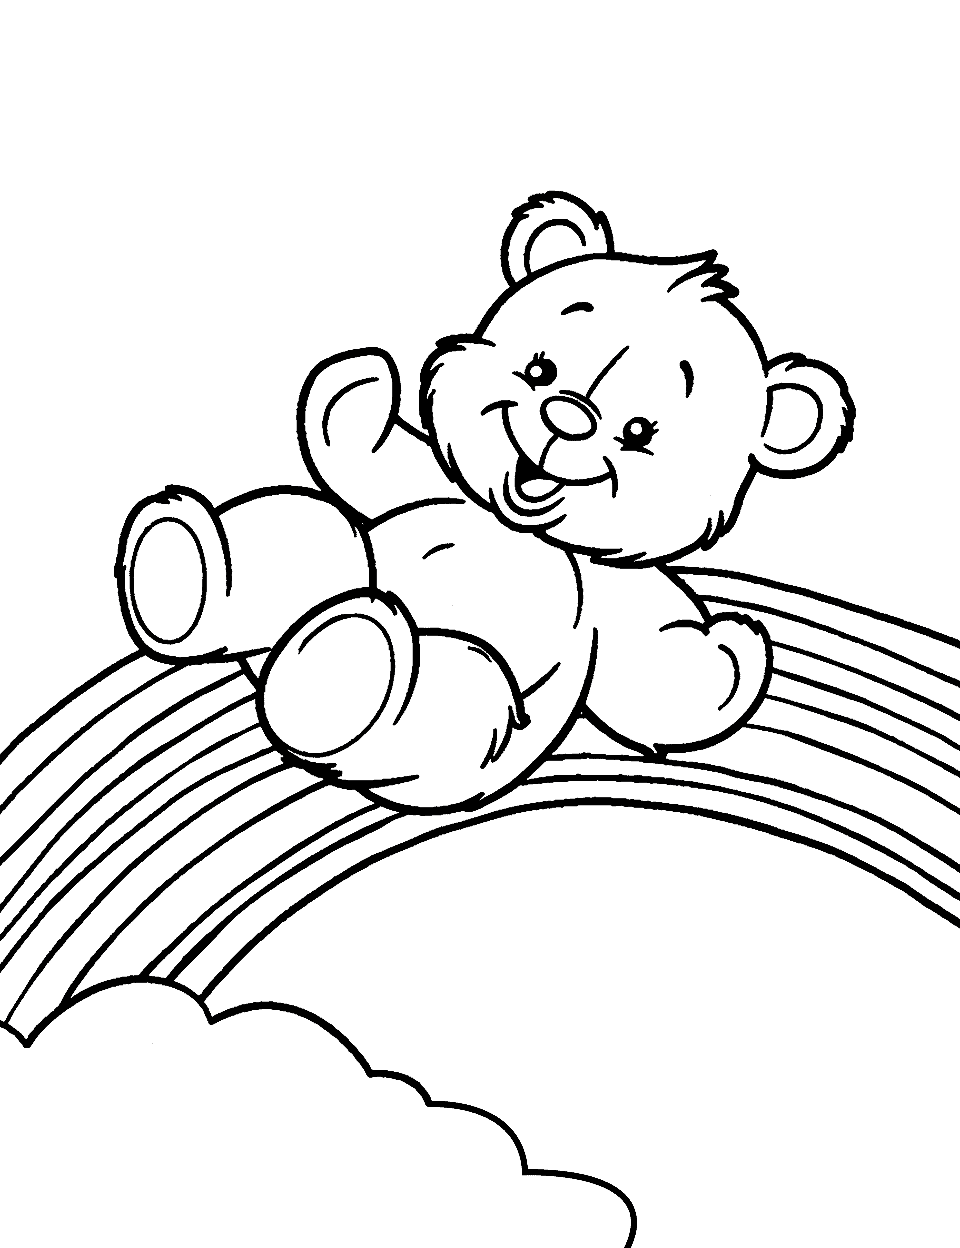 Teddy Bear and a Rainbow Coloring Page - A teddy bear sliding down a colorful rainbow.